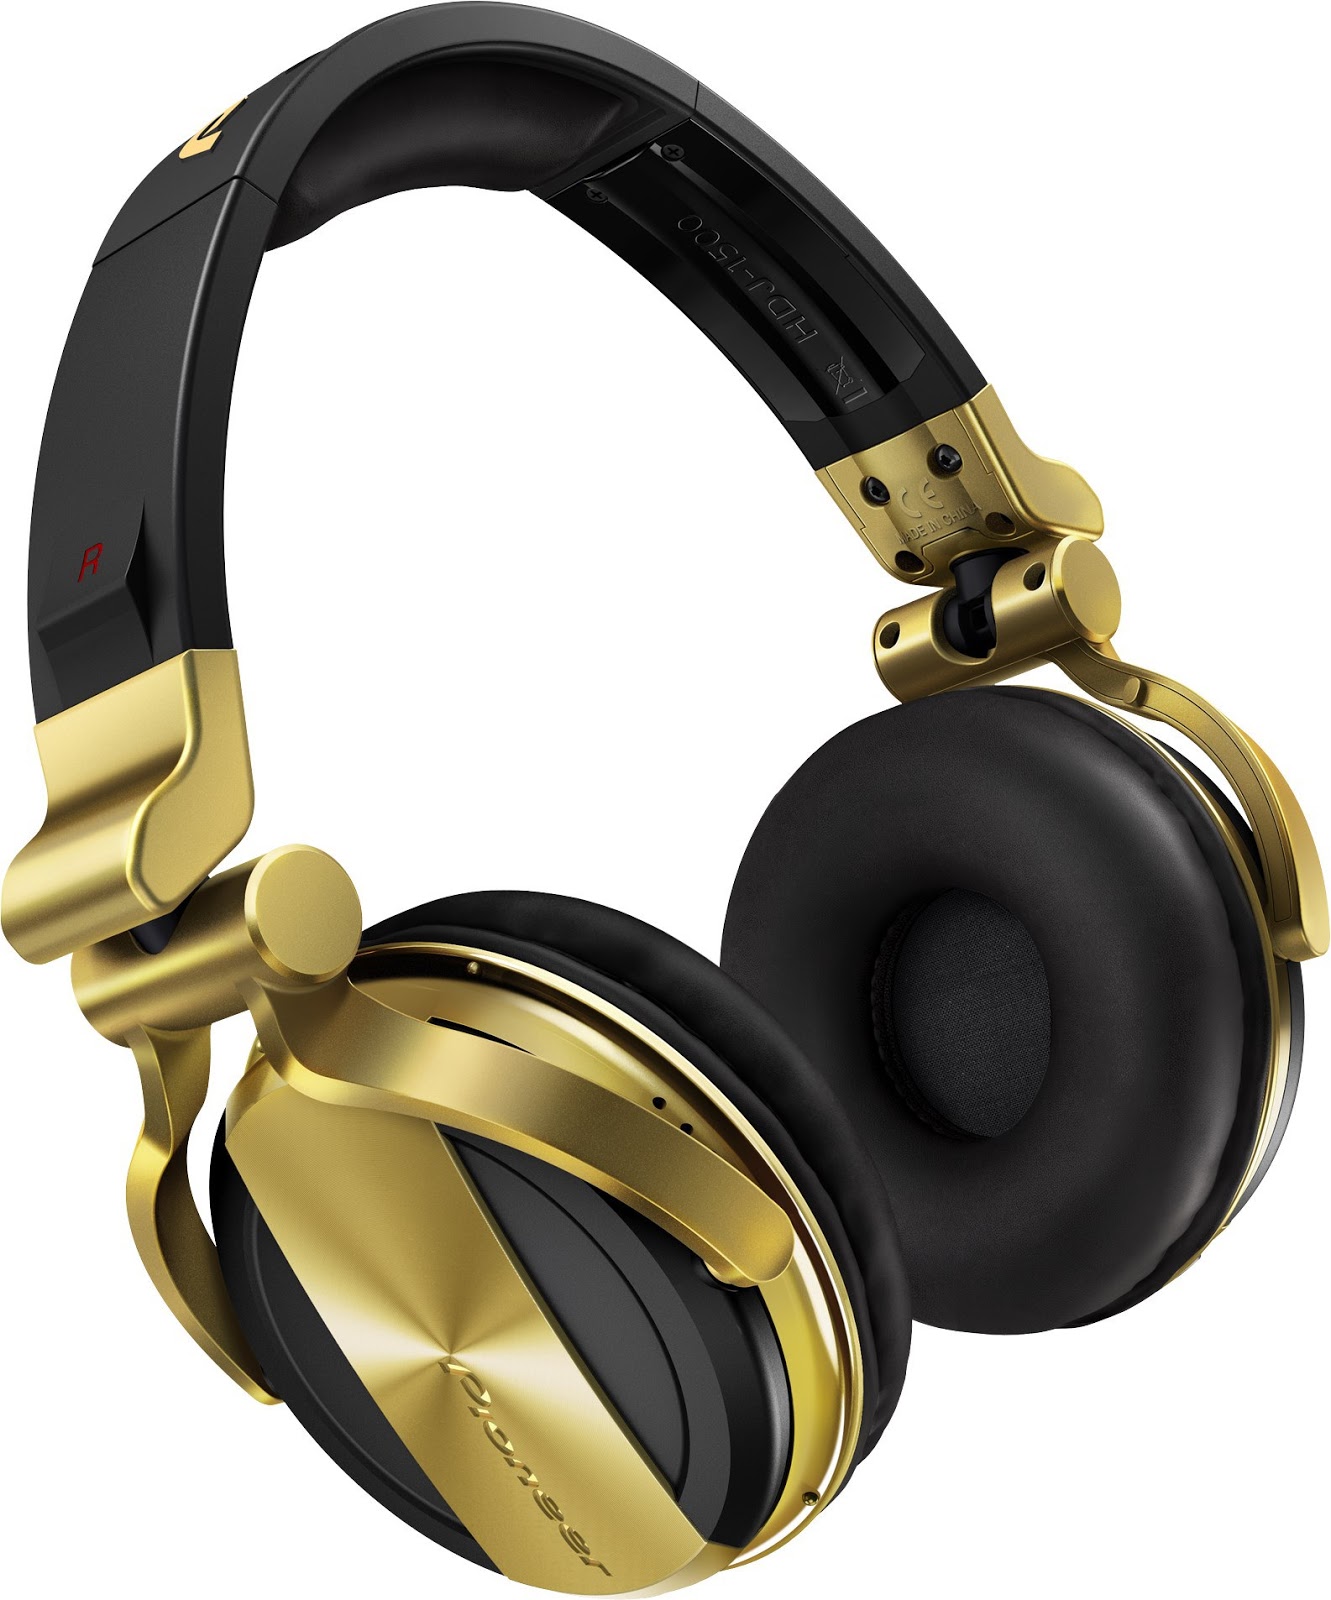 Audio-Technica anunció la disponibilidad de una versión en azul/negro de  sus populares auriculares de monitoreo profesional ATH-M50x – Audio Música  Digital